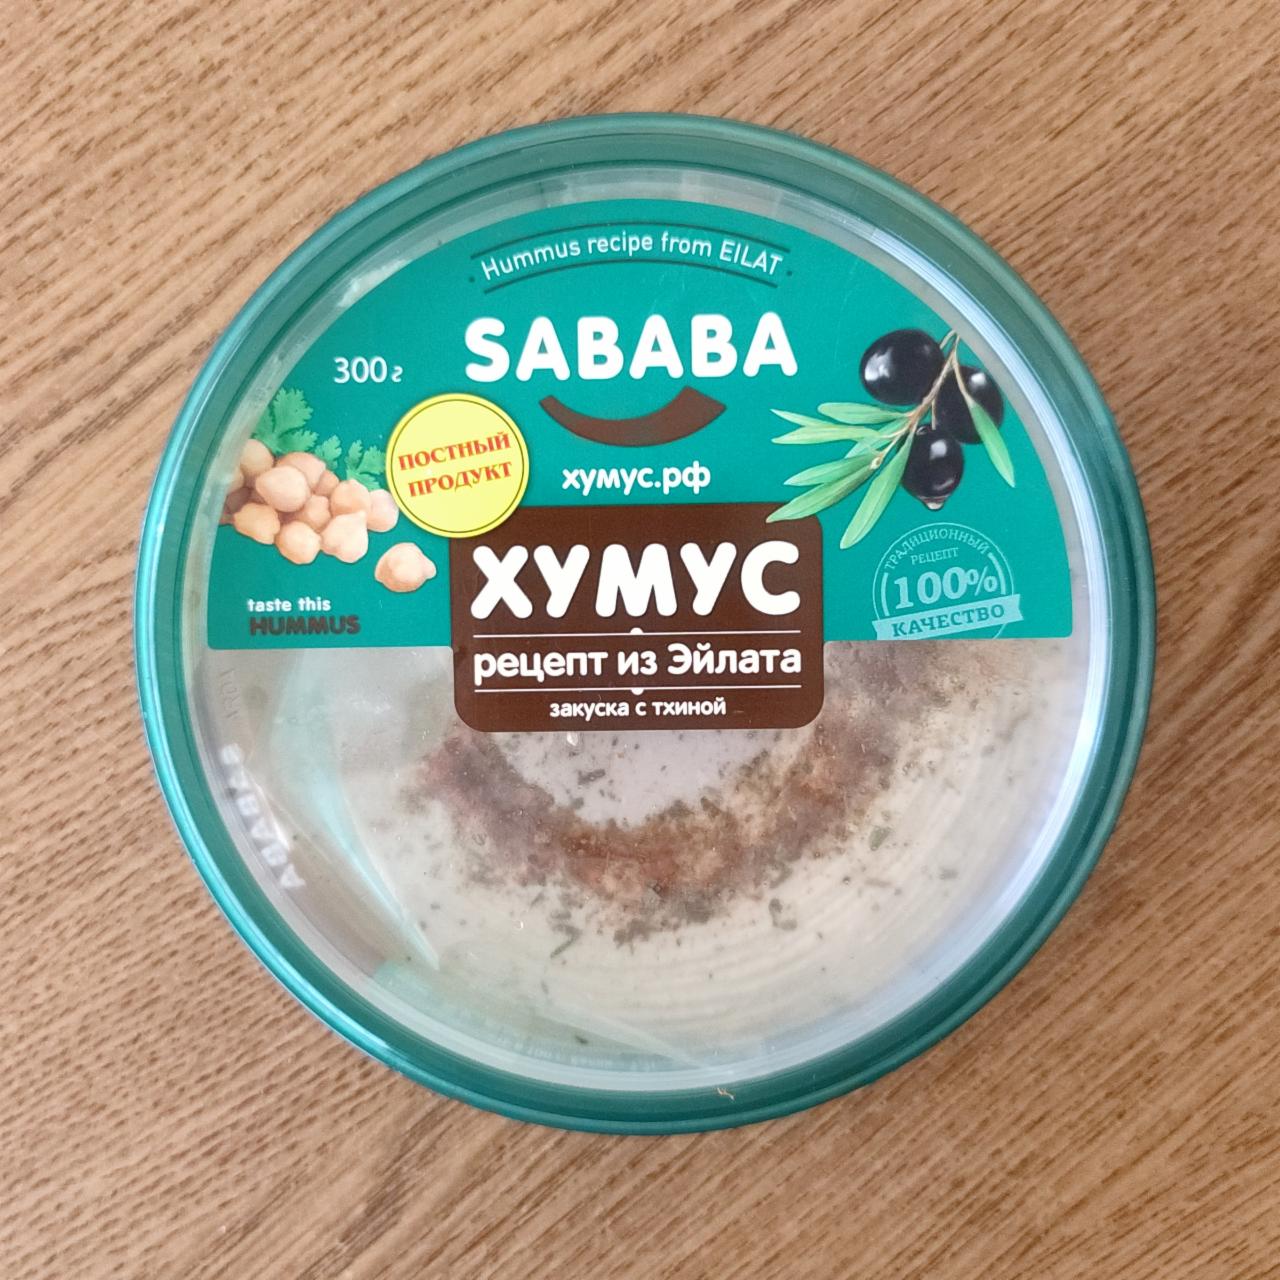 Фото - Хумус рецепт из Эйлата с тхиной Sababa